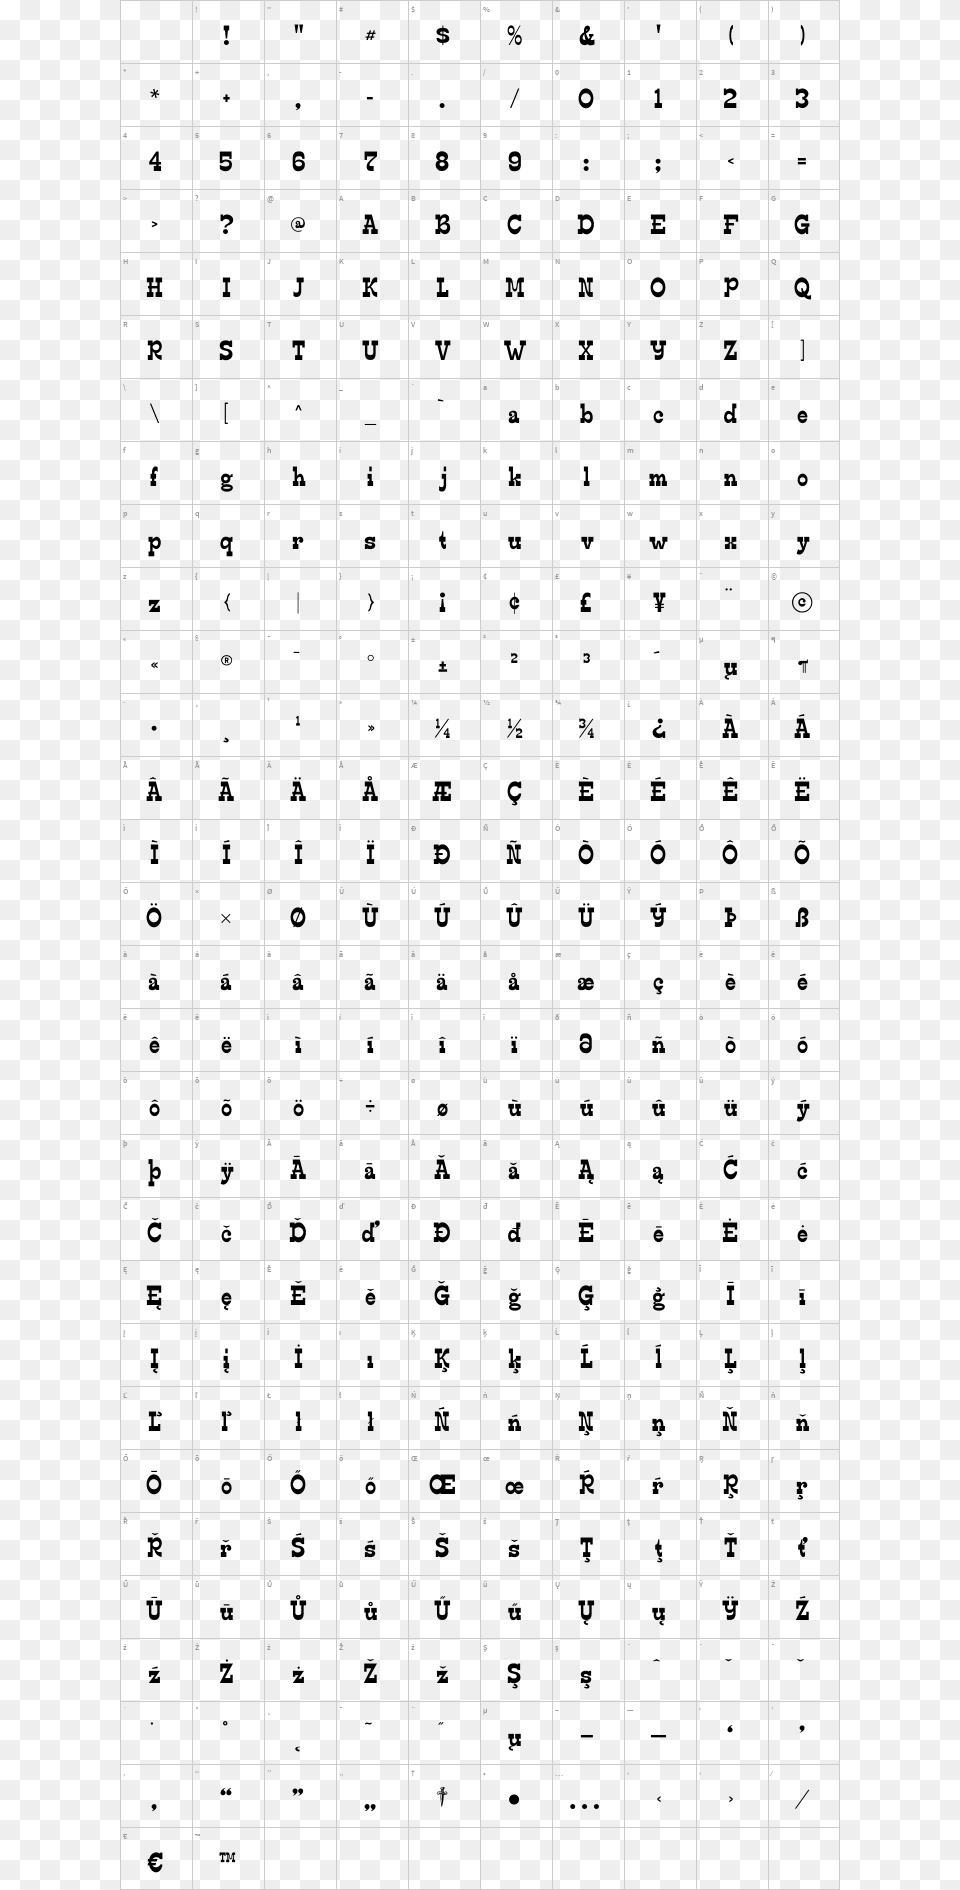 Edmunds Regular Edmunds Distressed Number, Text, Alphabet, Pattern, Symbol Png Image